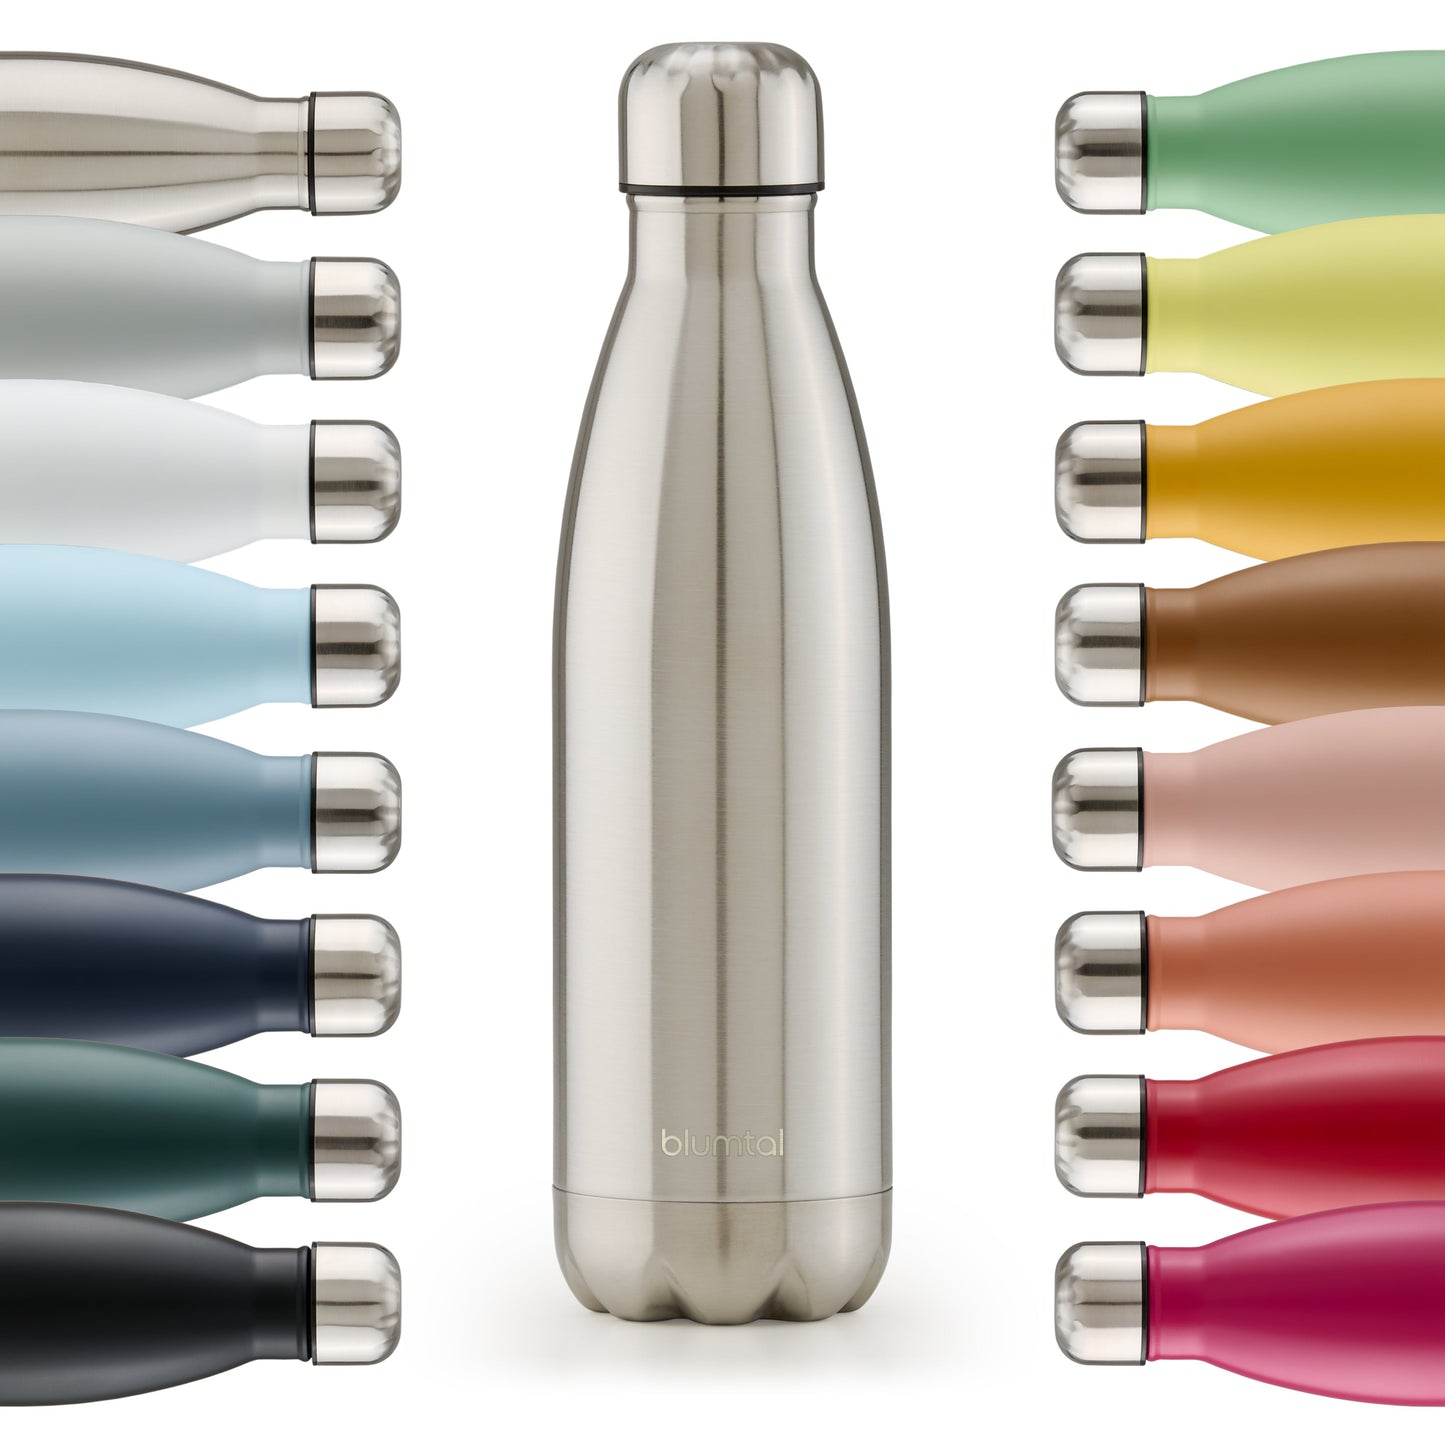 Farbige Auswahl an isolierten Edelstahl-Trinkflaschen von blumtal in einer Reihe angeordnet mit Fokus auf eine vorderseitige edelstahl farbene Flasche.